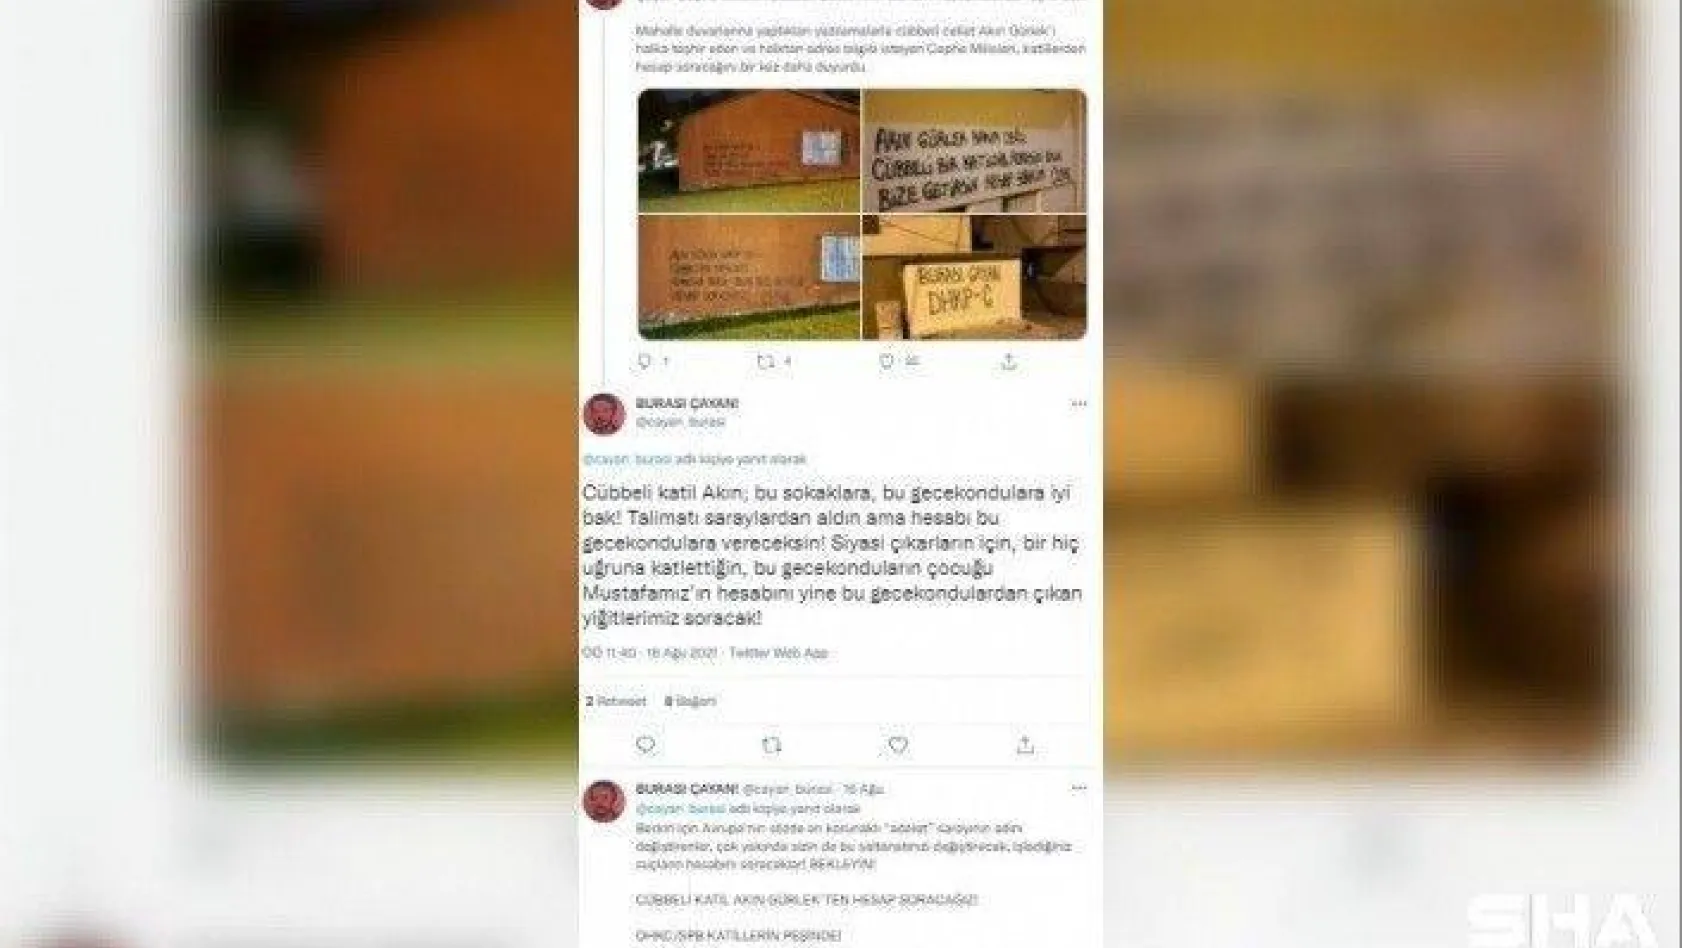 Ağır Ceza Mahkemesi başkanının sosyal medyadan tehdit edilmesine ilişkin soruşturma başlatıldı